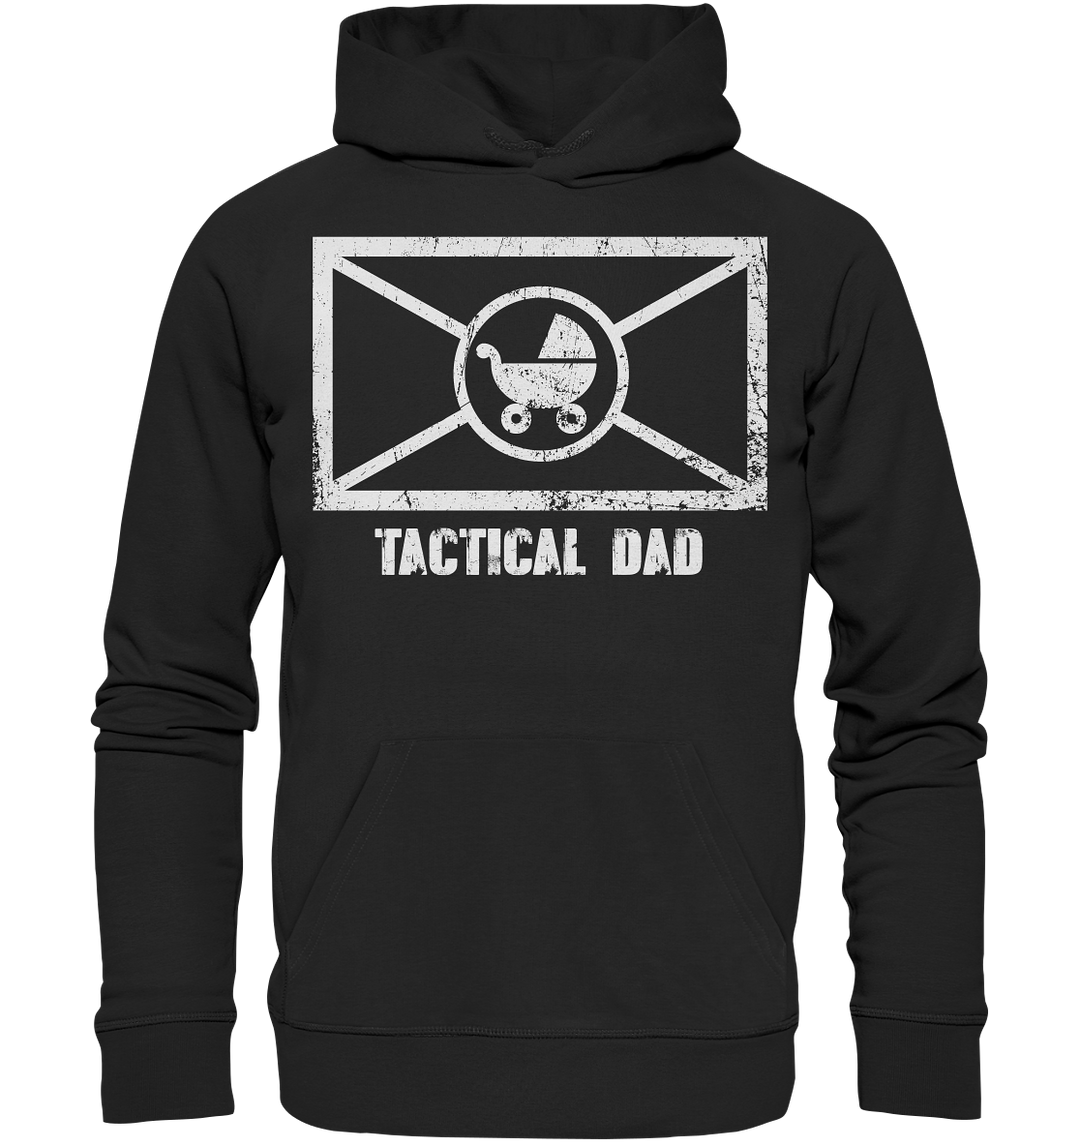 "Tactical Dad" - Premium Unisex Hoodie